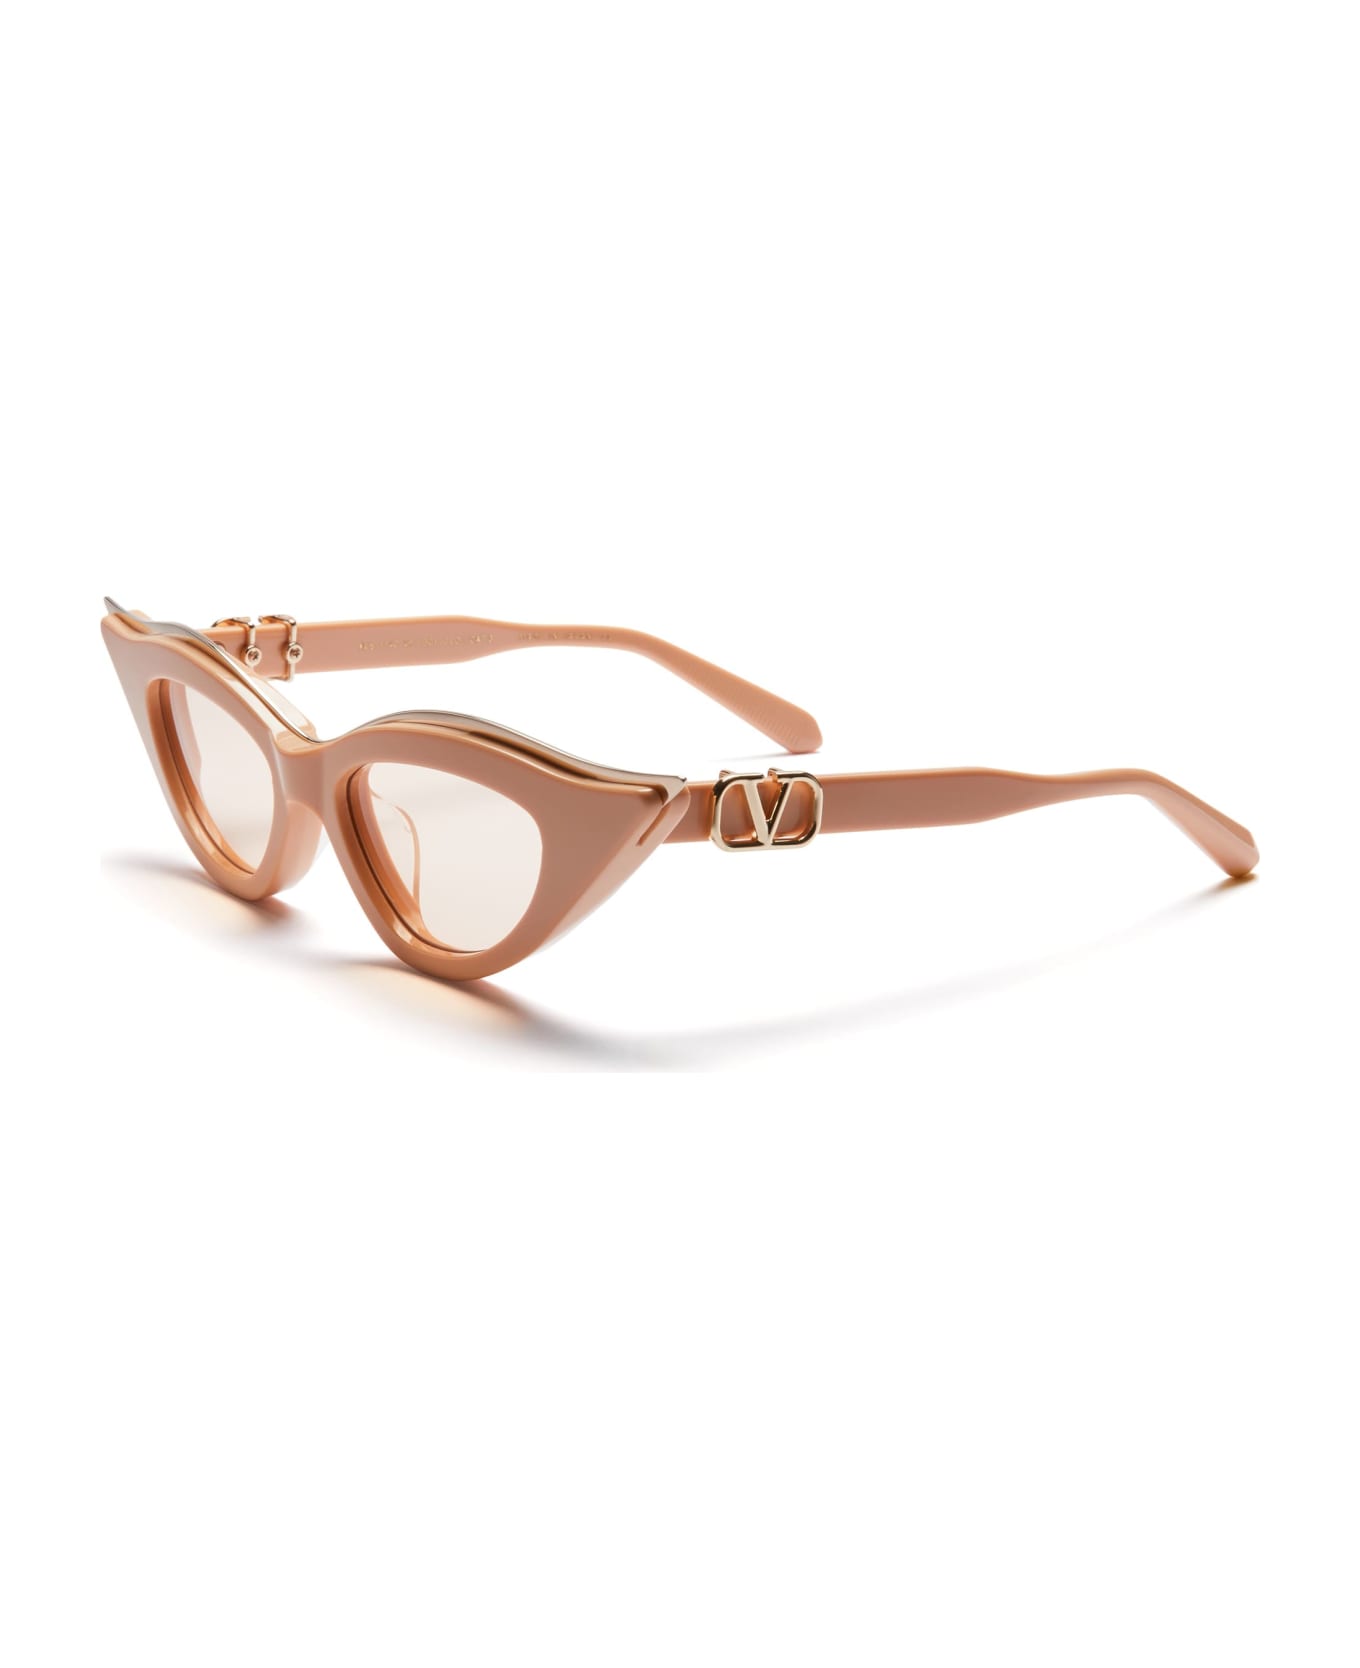 Valentino Eyewear V-goldcut-ii - Beige / White Gold Sunglasses - beige